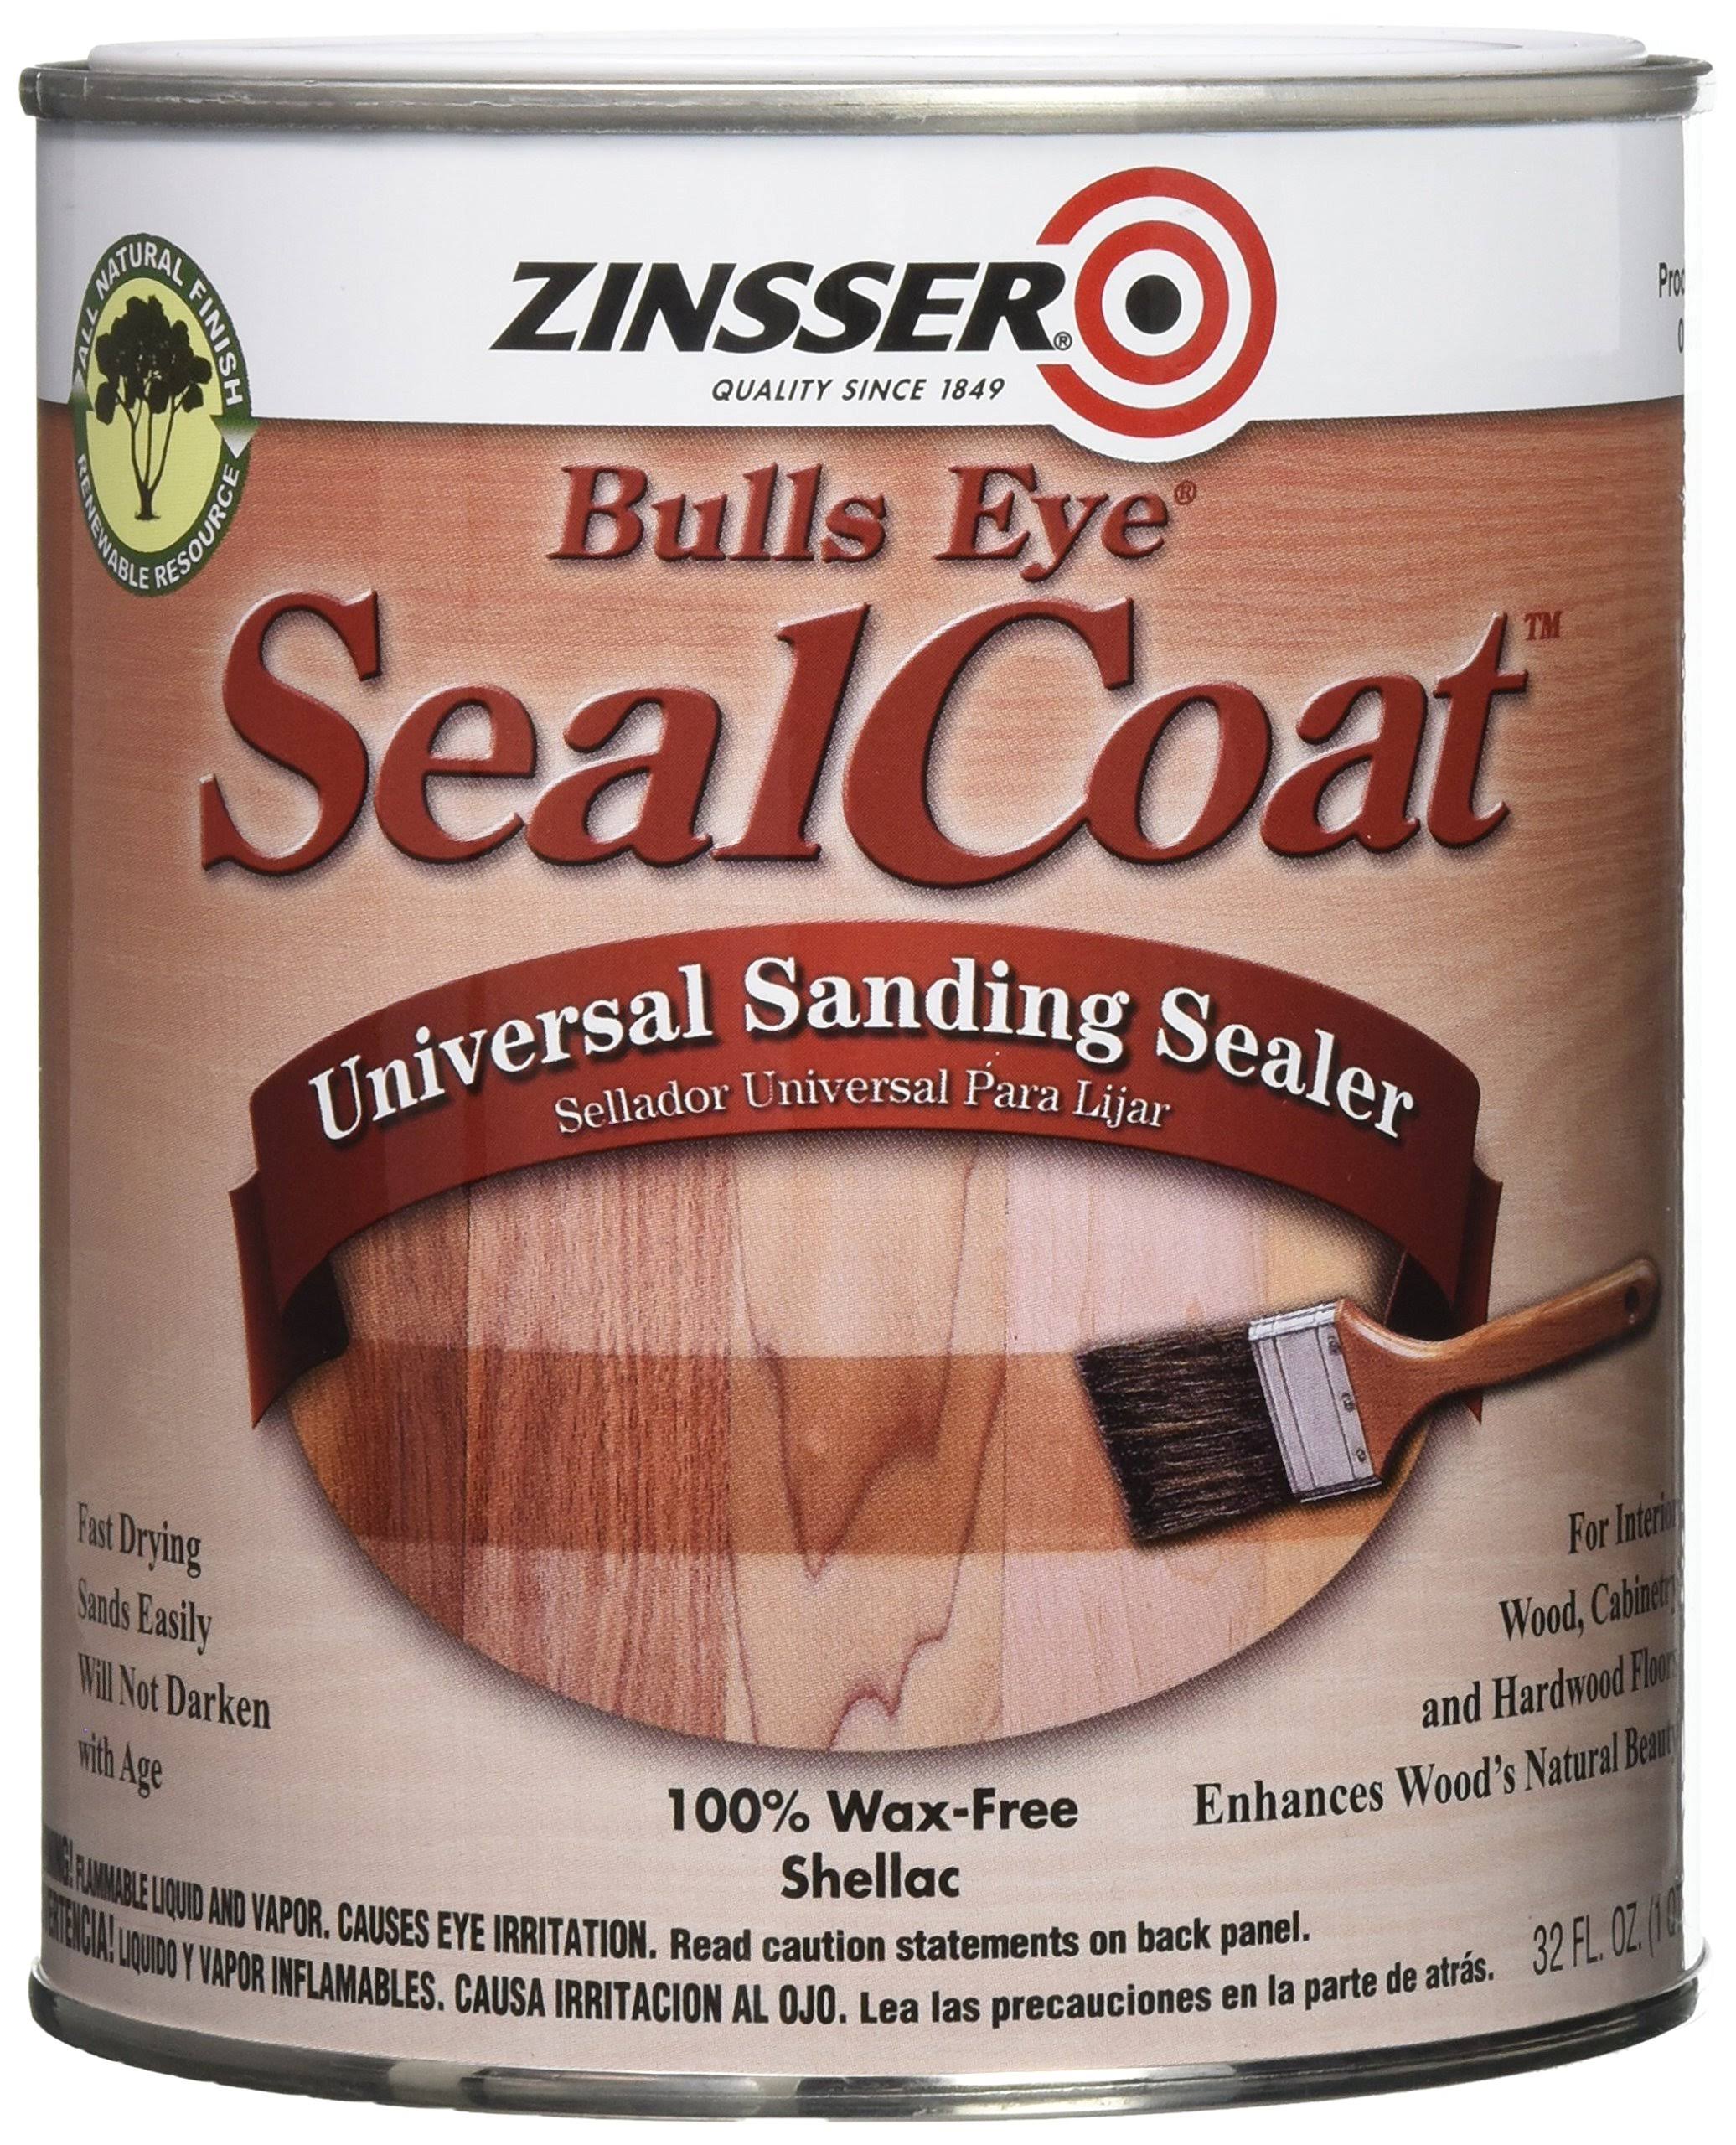 Rust-Oleum Zinsser Bulls Eye Sealcoat Universal Sanding Sealer